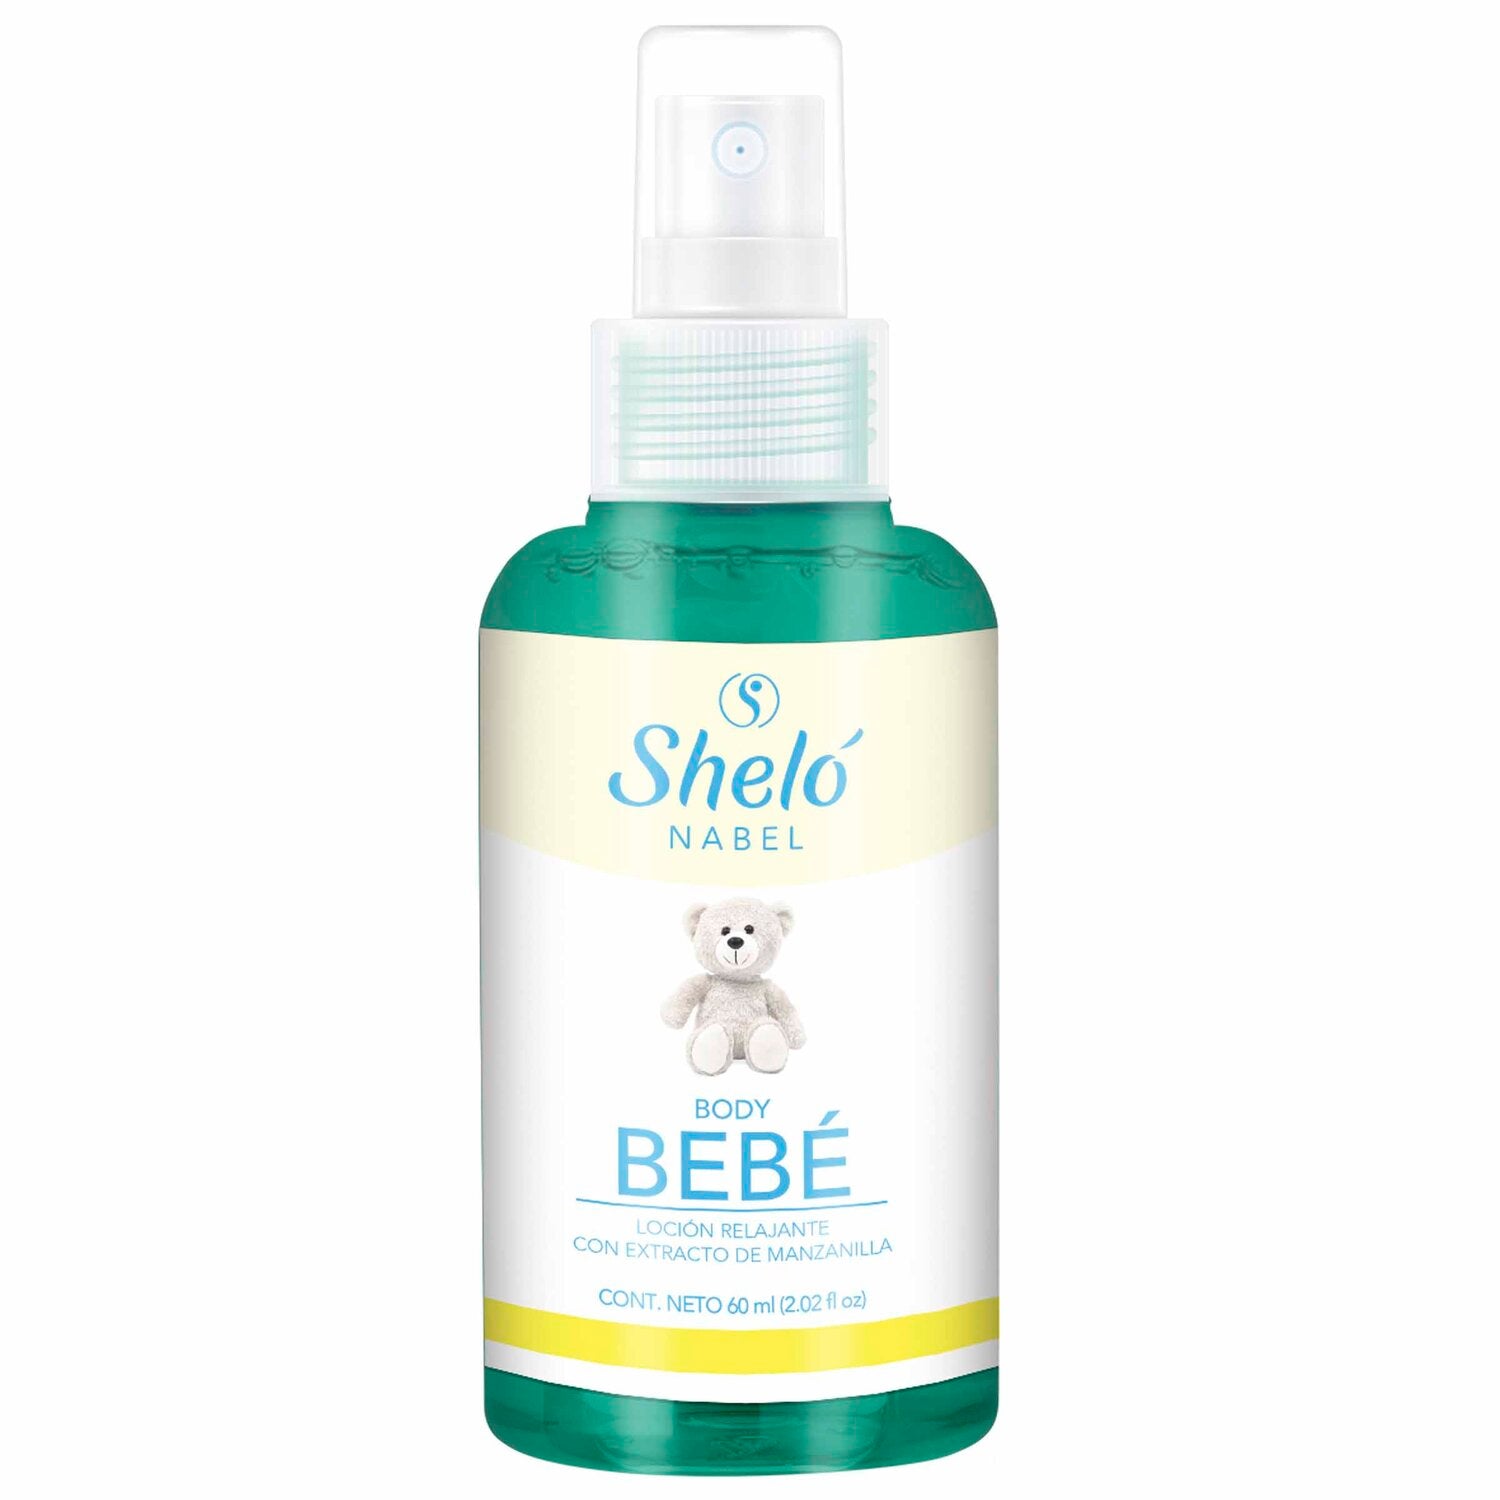 Shelo Nabel Baby body mist -  60. Ml 2.02 fl oz Con extracto natural y manzanilla